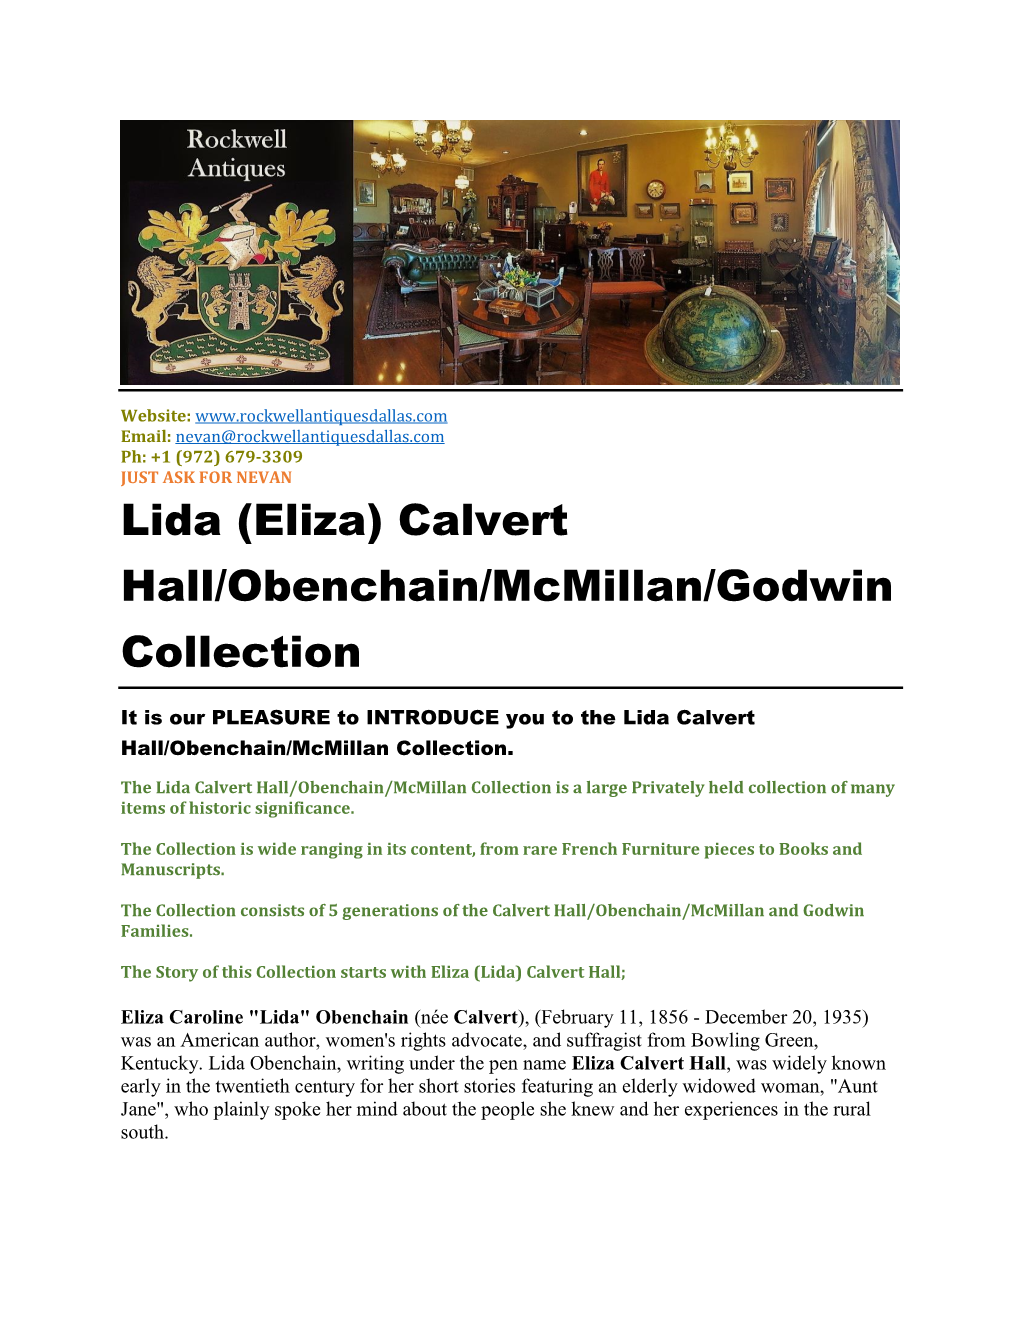 Lida (Eliza) Calvert Hall/Obenchain/Mcmillan/Godwin Collection